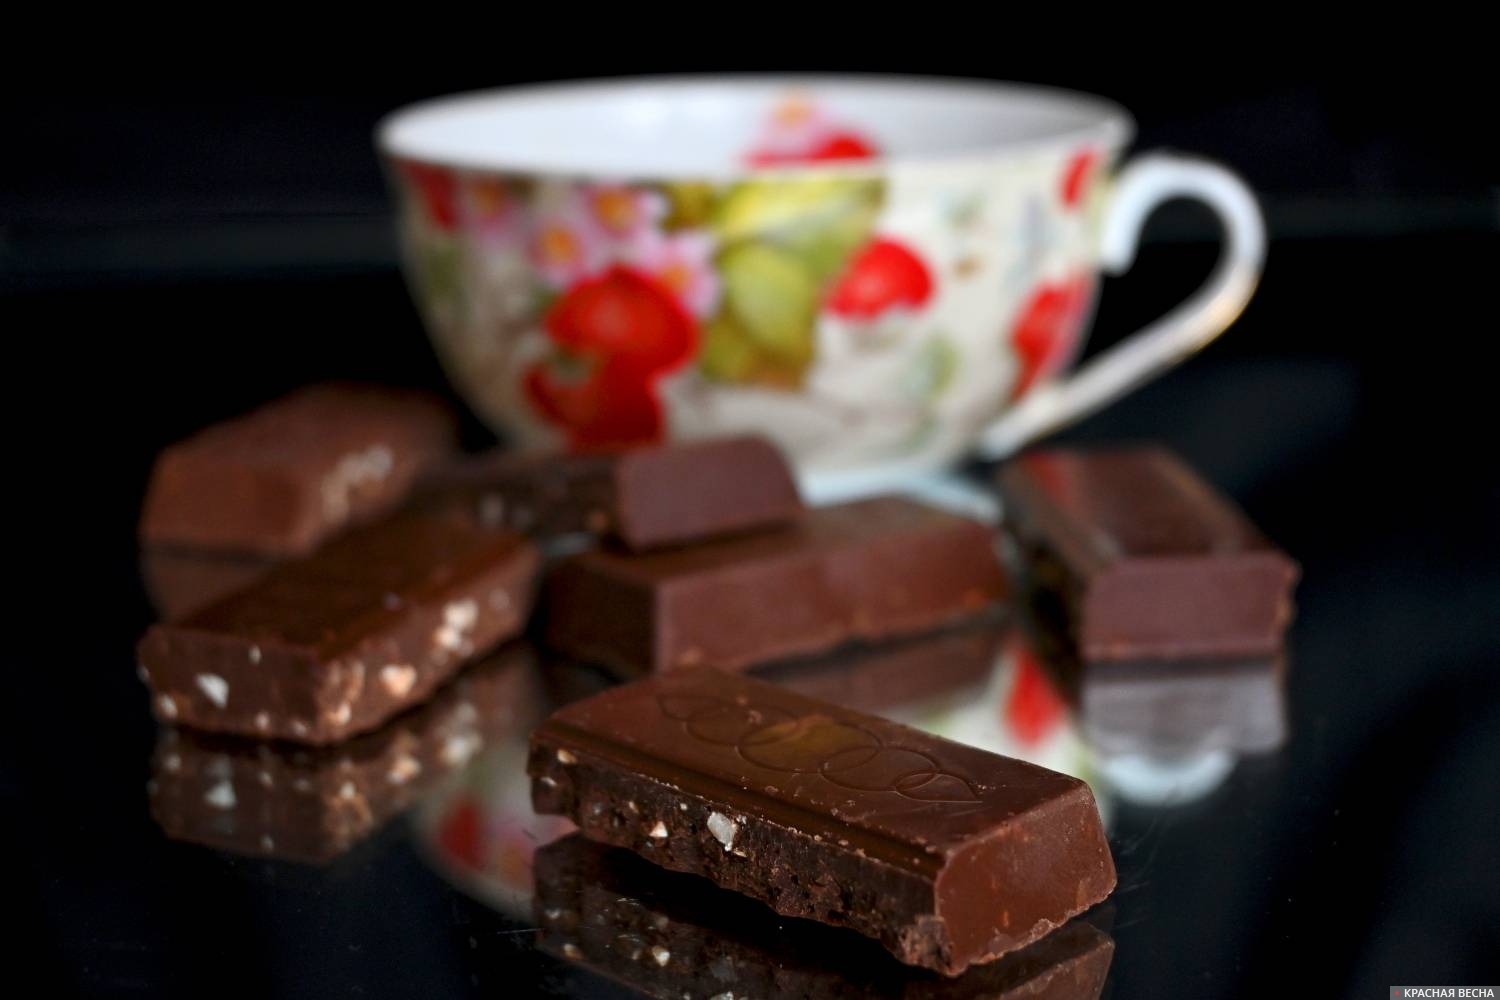 Купить шоколад симферополь. Шоколад Слава. Шоколад купить. Продажа шоколада. Milky way шоколад картинки.